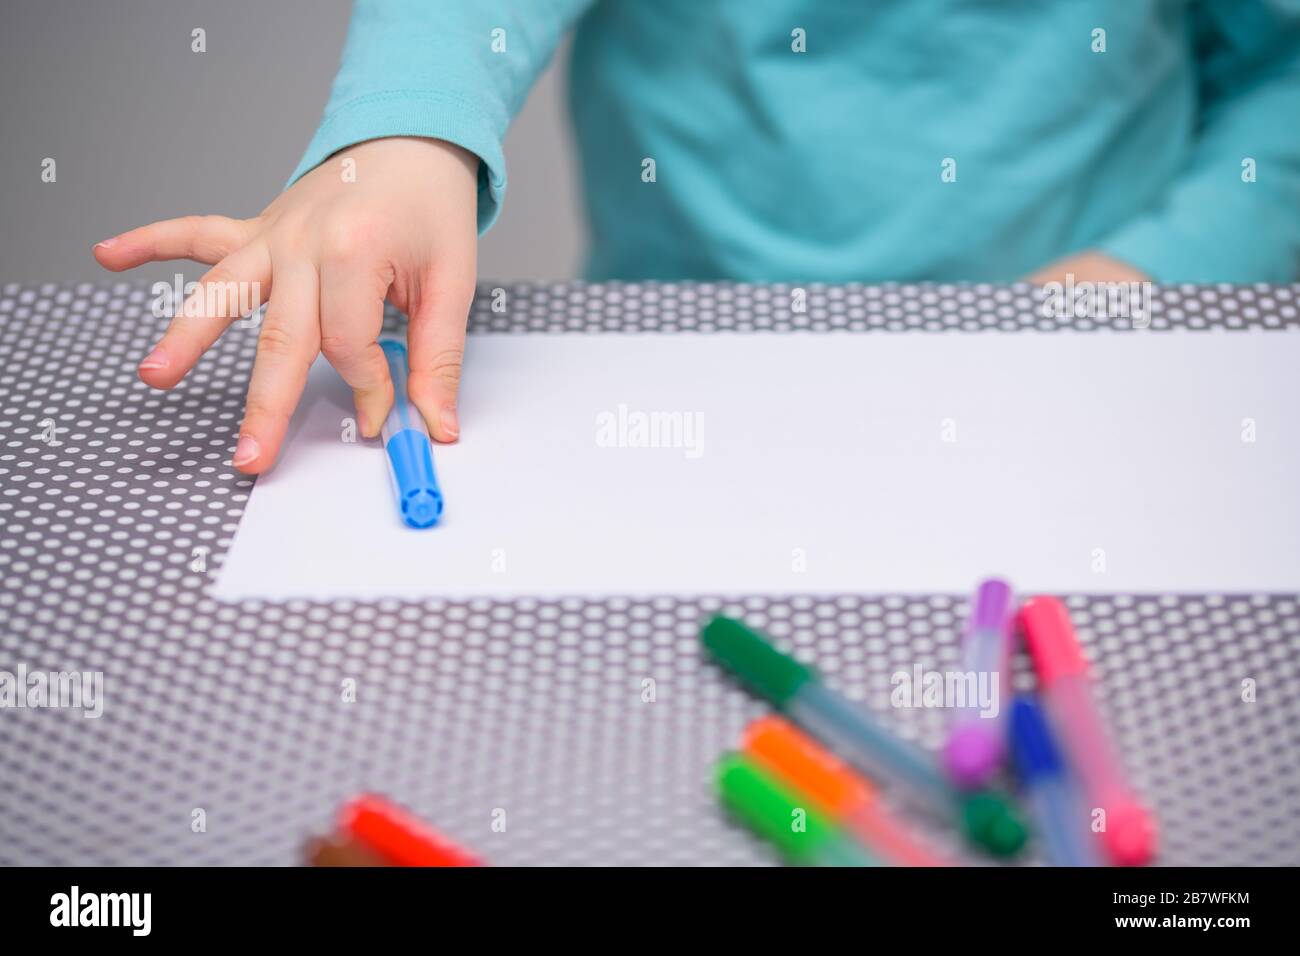 Primo piano di un ragazzo di cinque anni che mette una penna blu chiaro su una carta bianca sopra un tavolo con puntini bianchi. Il ragazzo è vestito con una camicia turchese. Foto Stock